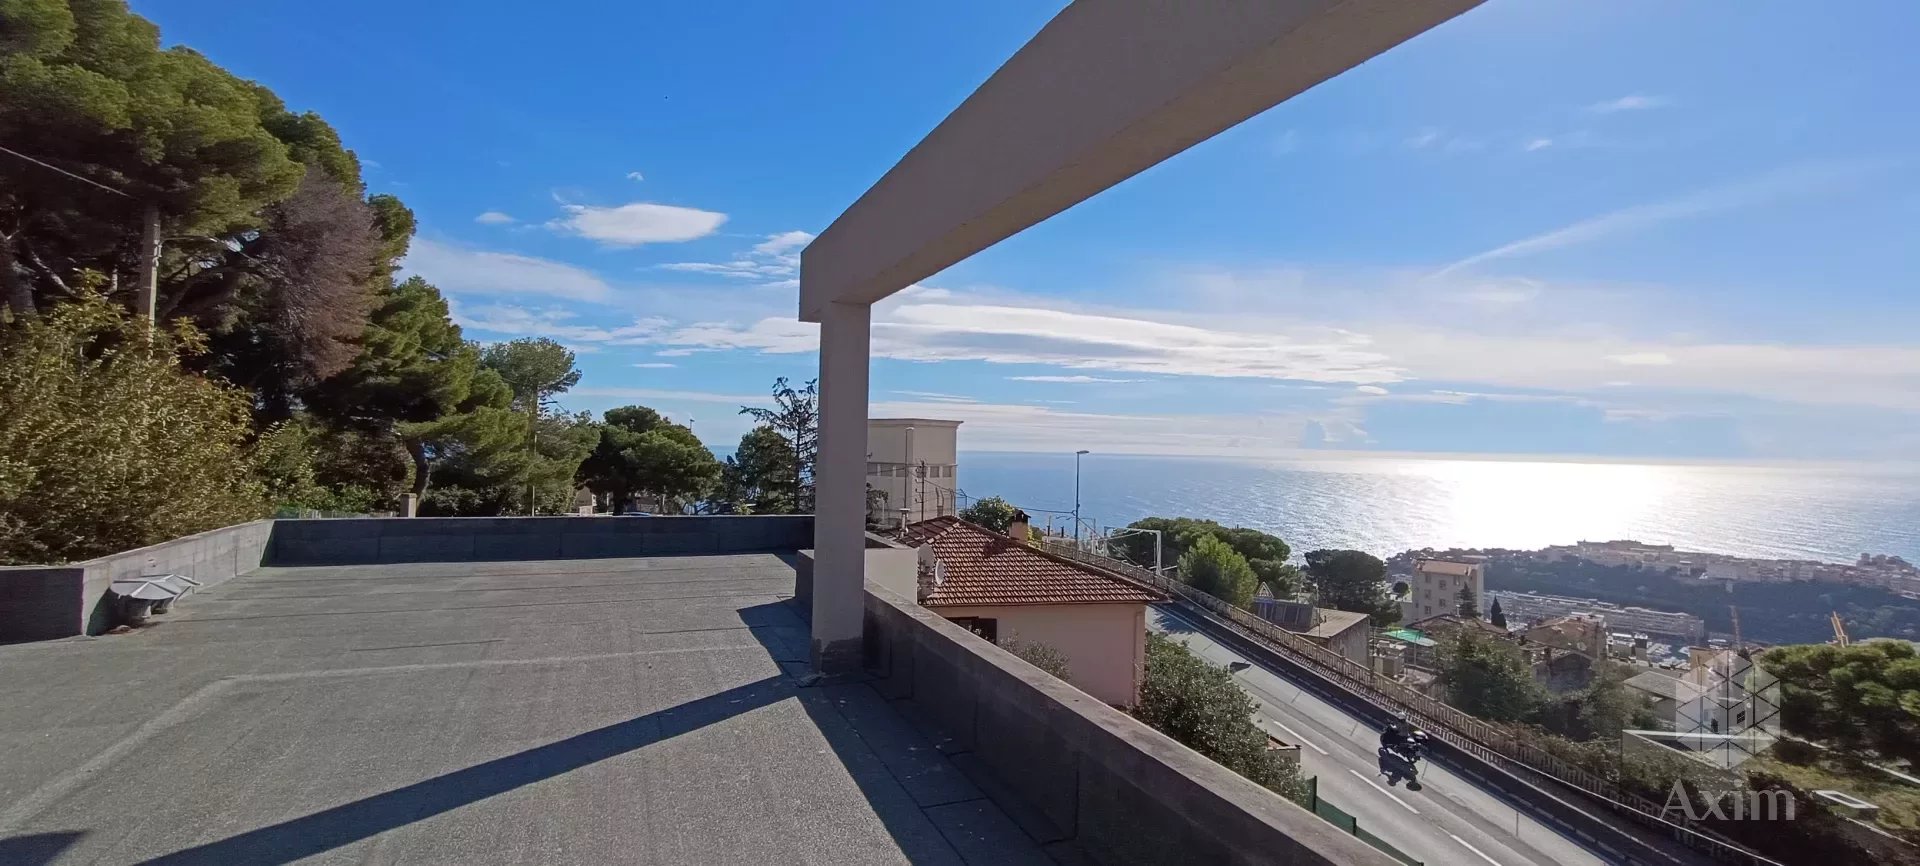 Villa contemporanea con vista panoramica sul mare